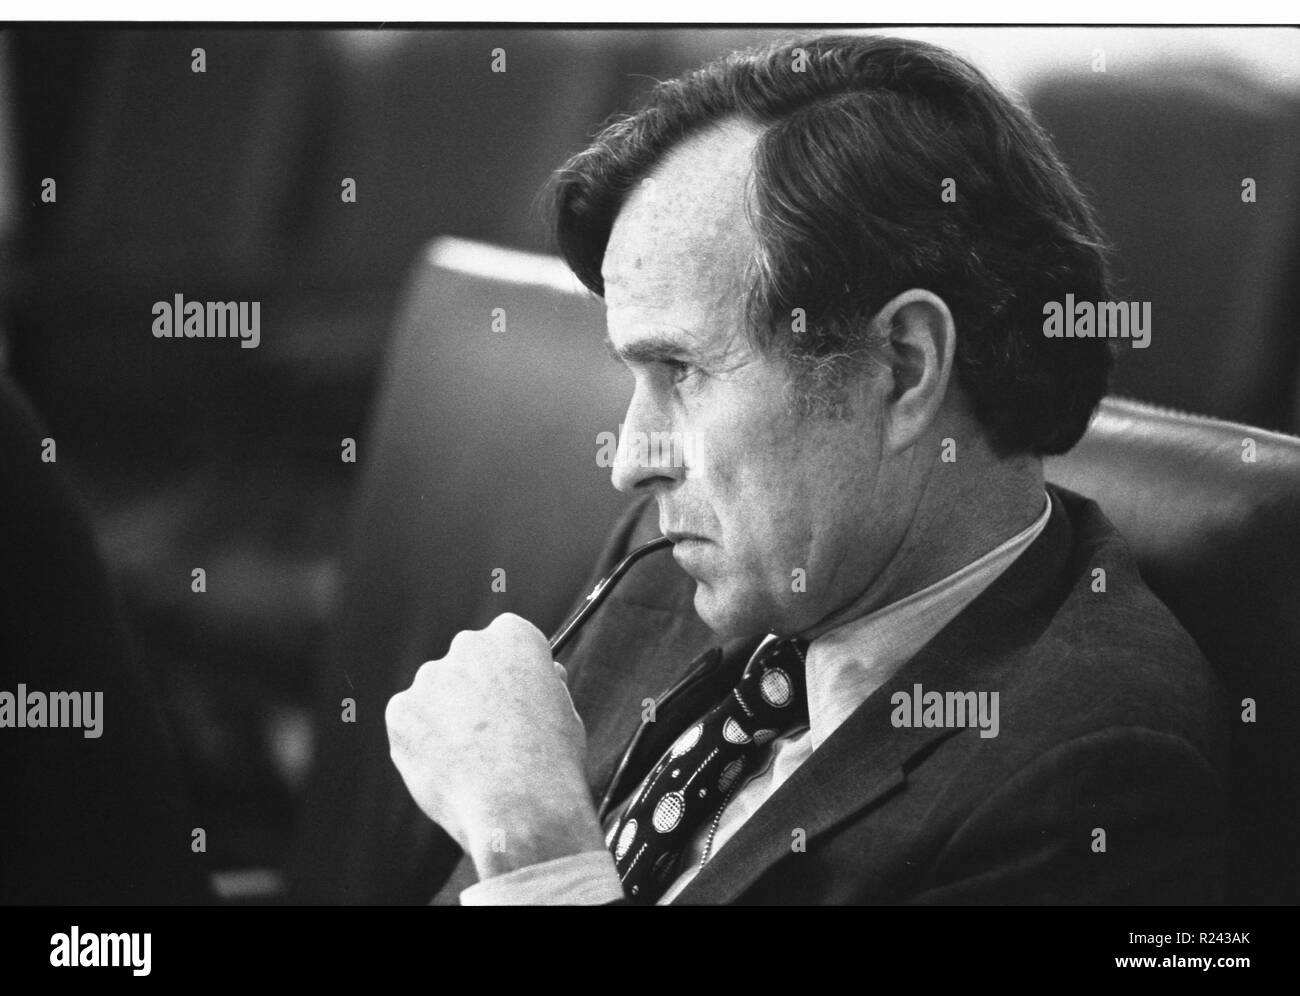 George Herbert Walker Bush (12. Juni 1924), 41. Präsident der Vereinigten Staaten (1989-1993). Ein Republikaner, zuvor war er als Vice President (1981-1989), Abgeordneter, Botschafter, Direktor der Central Intelligence 1976-77 serviert. Stockfoto